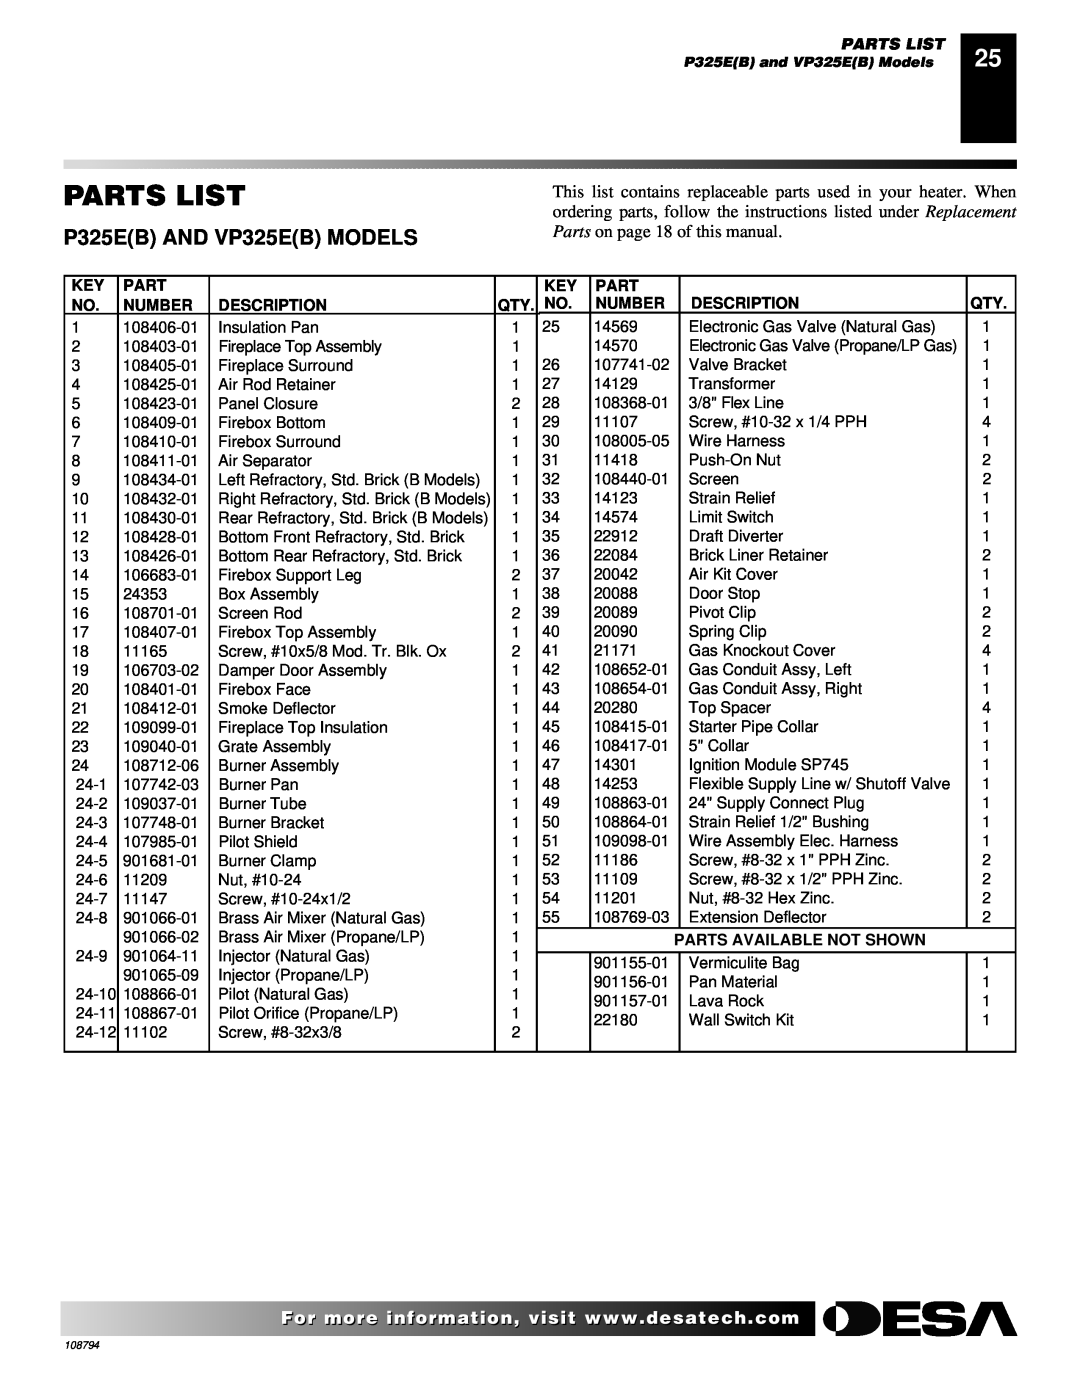 Desa P325E(B), VP325E(B), P324E, VP324E, P325E, VP325E Parts List, Number, Description, Parts Available Not Shown 